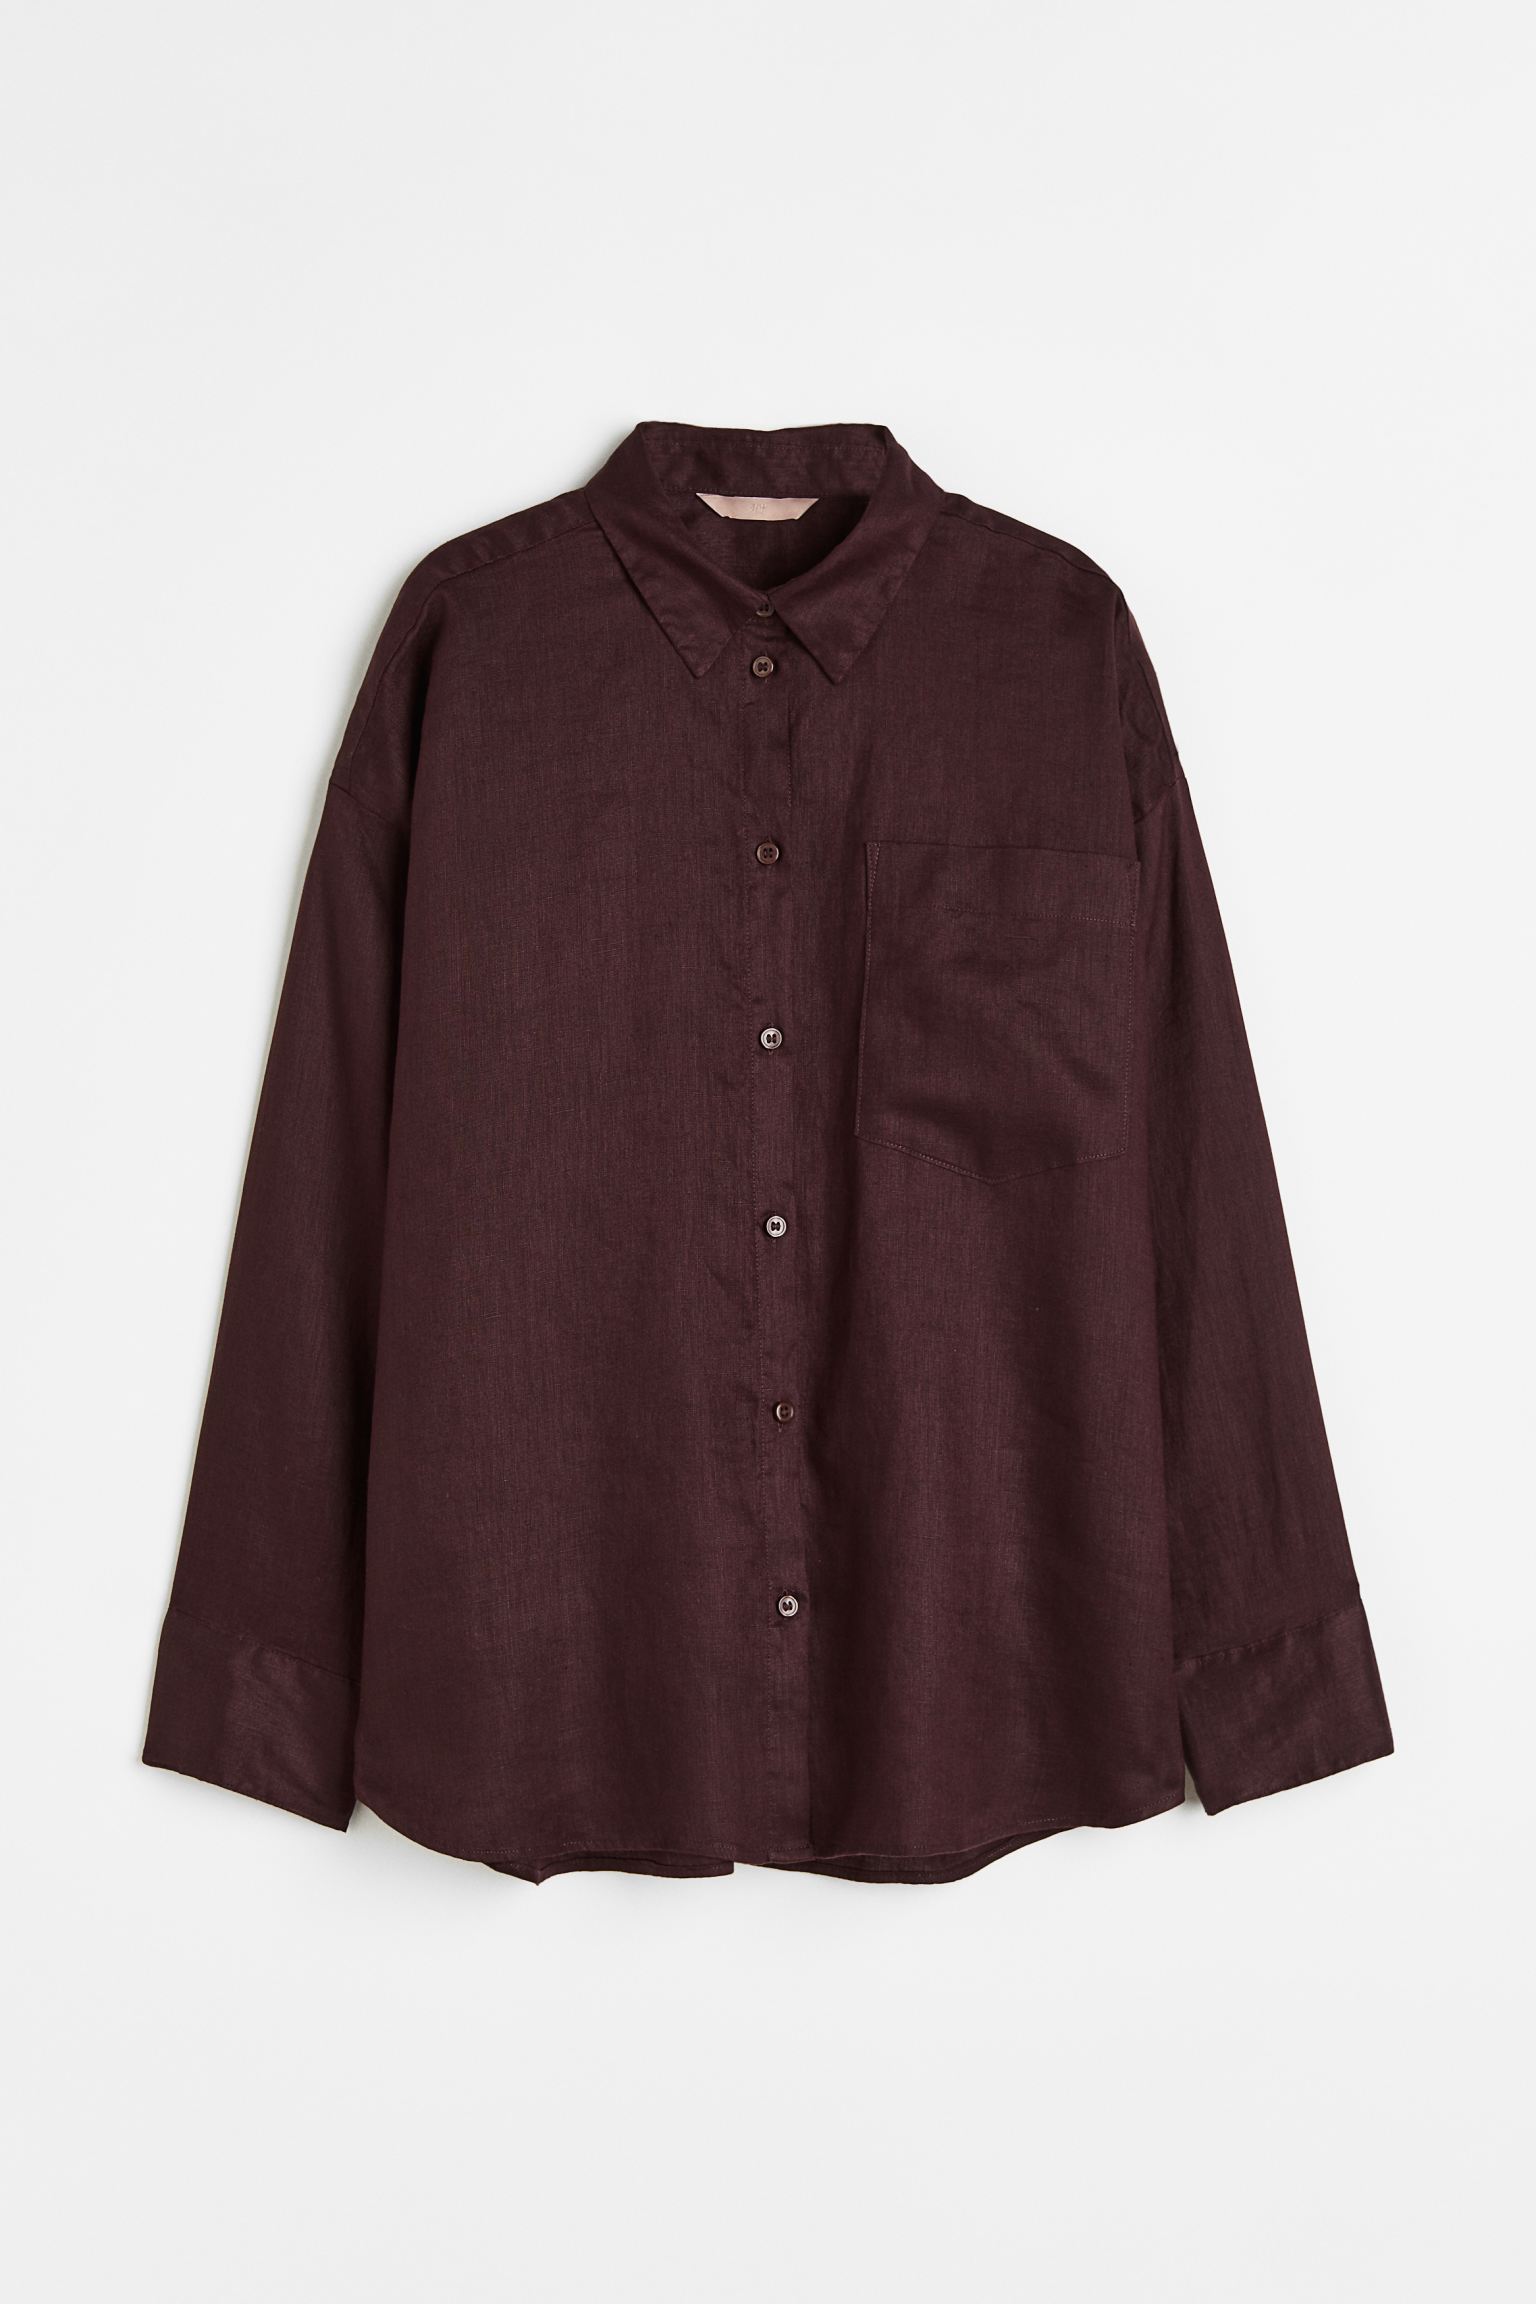 Рубашка женская H&M 1073662006 коричневая XS (доставка из-за рубежа)